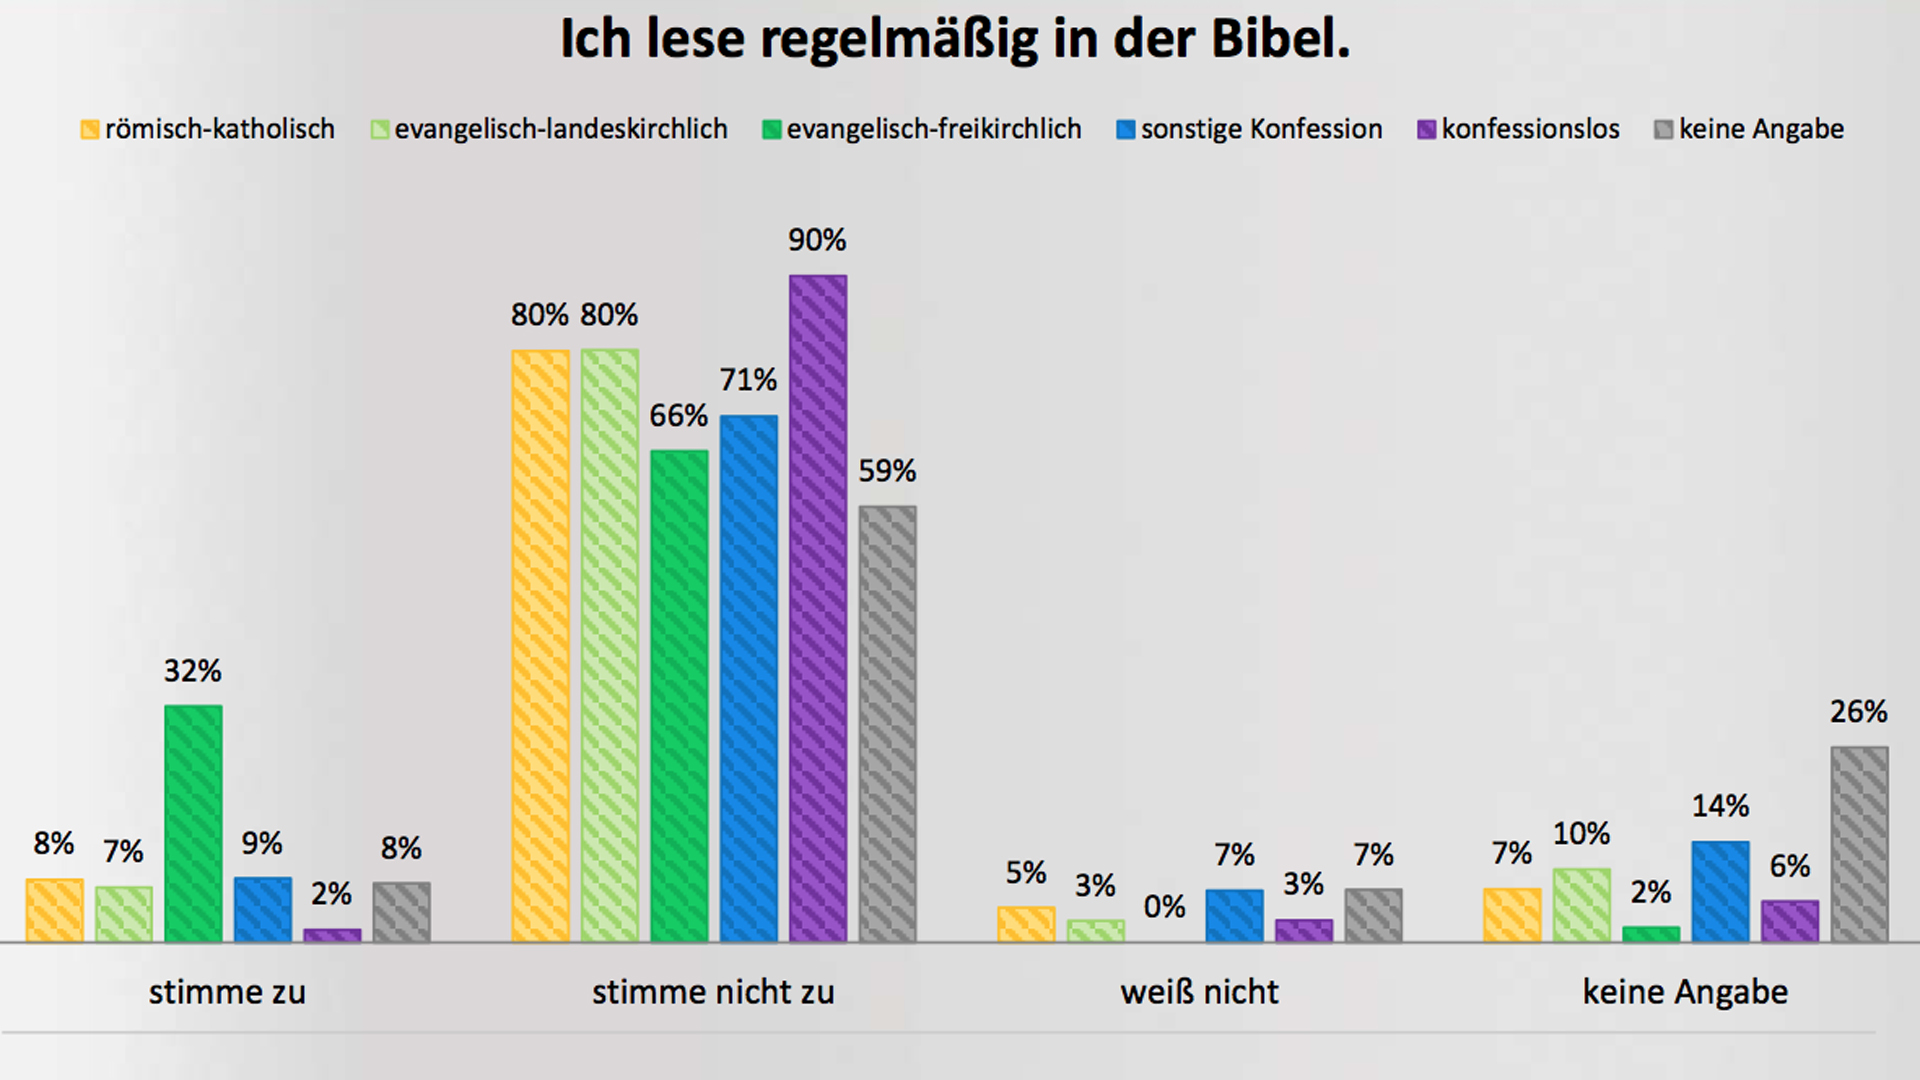 Evangelisch-freikirchliche Deutsche lesen am regelmäßigsten in der Bibel